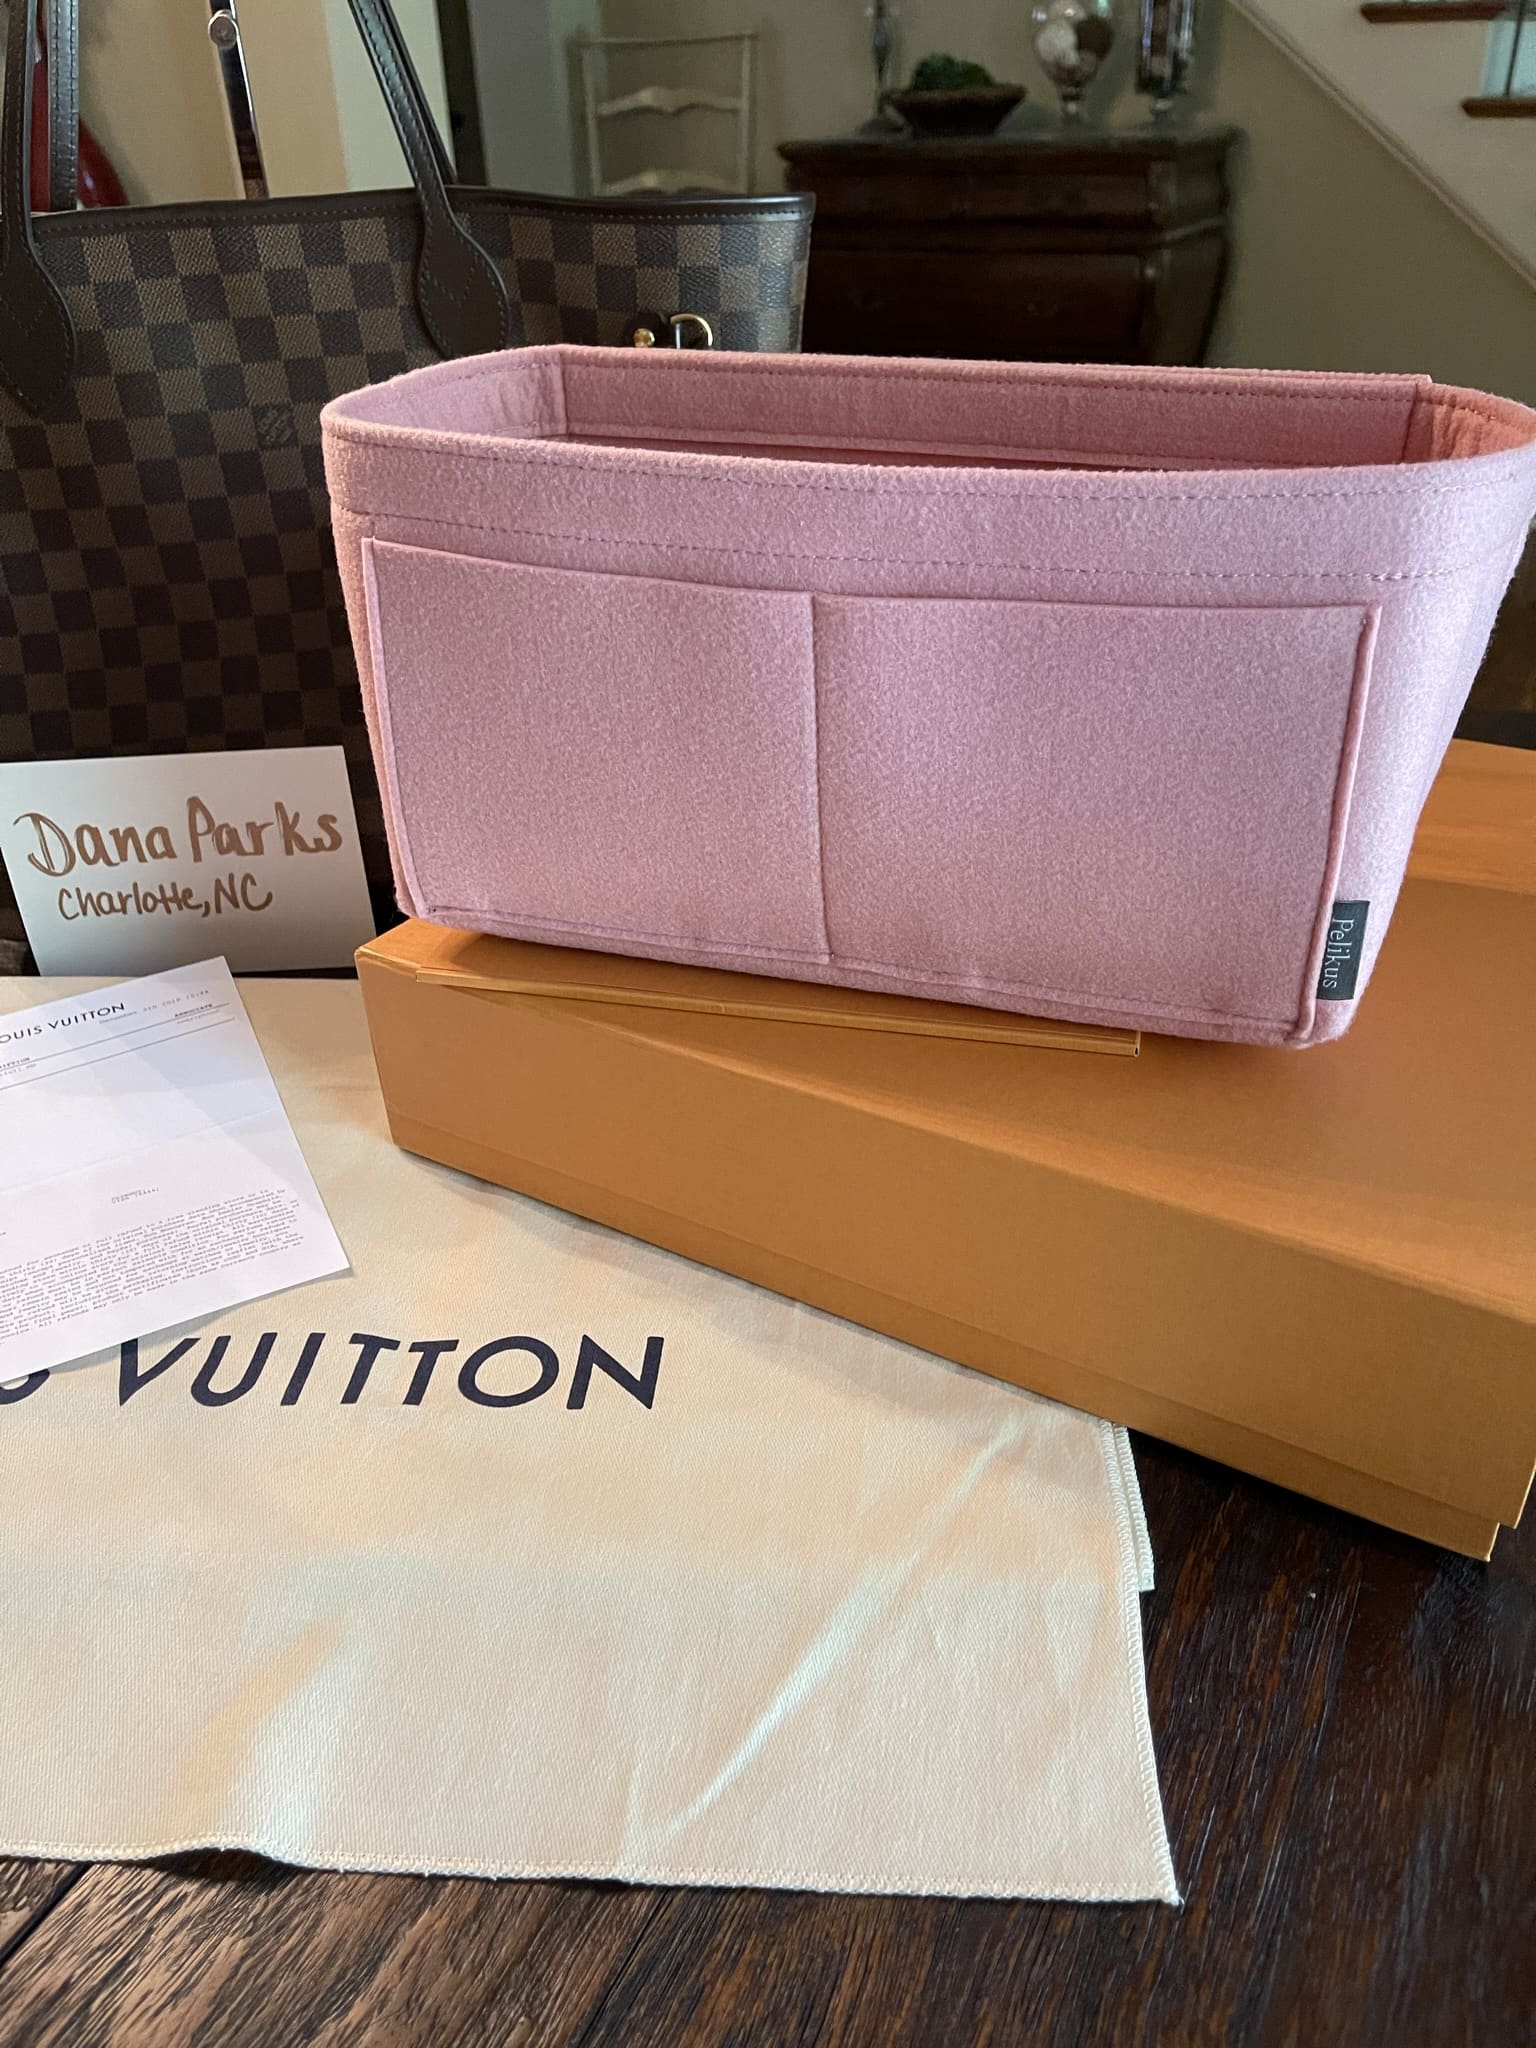 Bag Organizer for Louis Vuitton Easy Pouch On Strap - Zoomoni